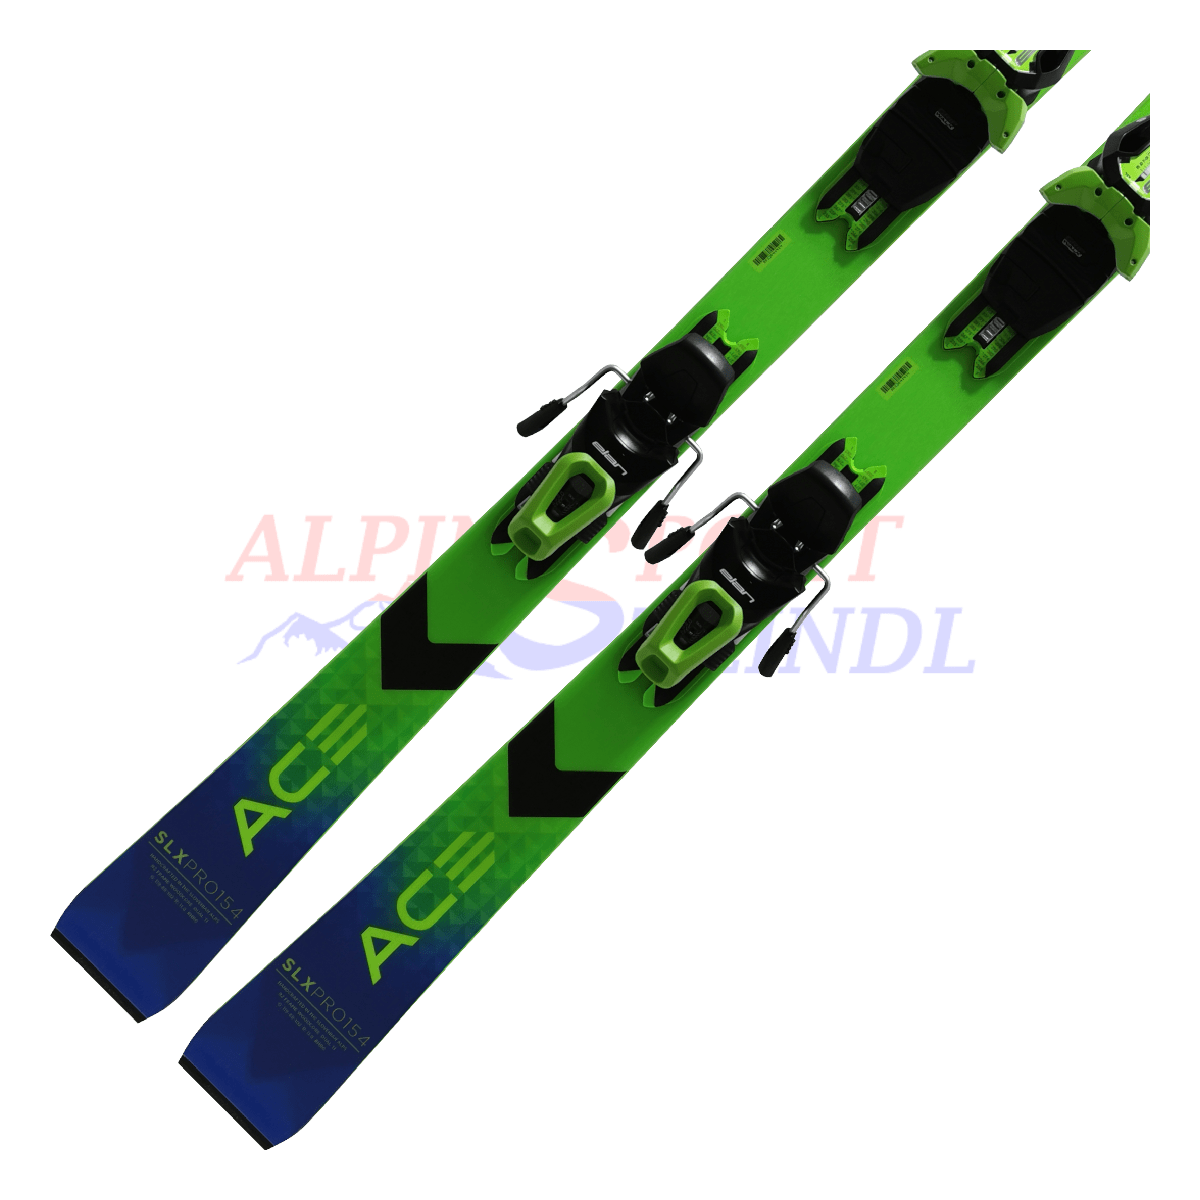 Elan ACE SLX Pro PowerShift aus dem Jahre 2023/24 in der Farbe Blau-Grün, Ansicht des unteren Teils des Skis